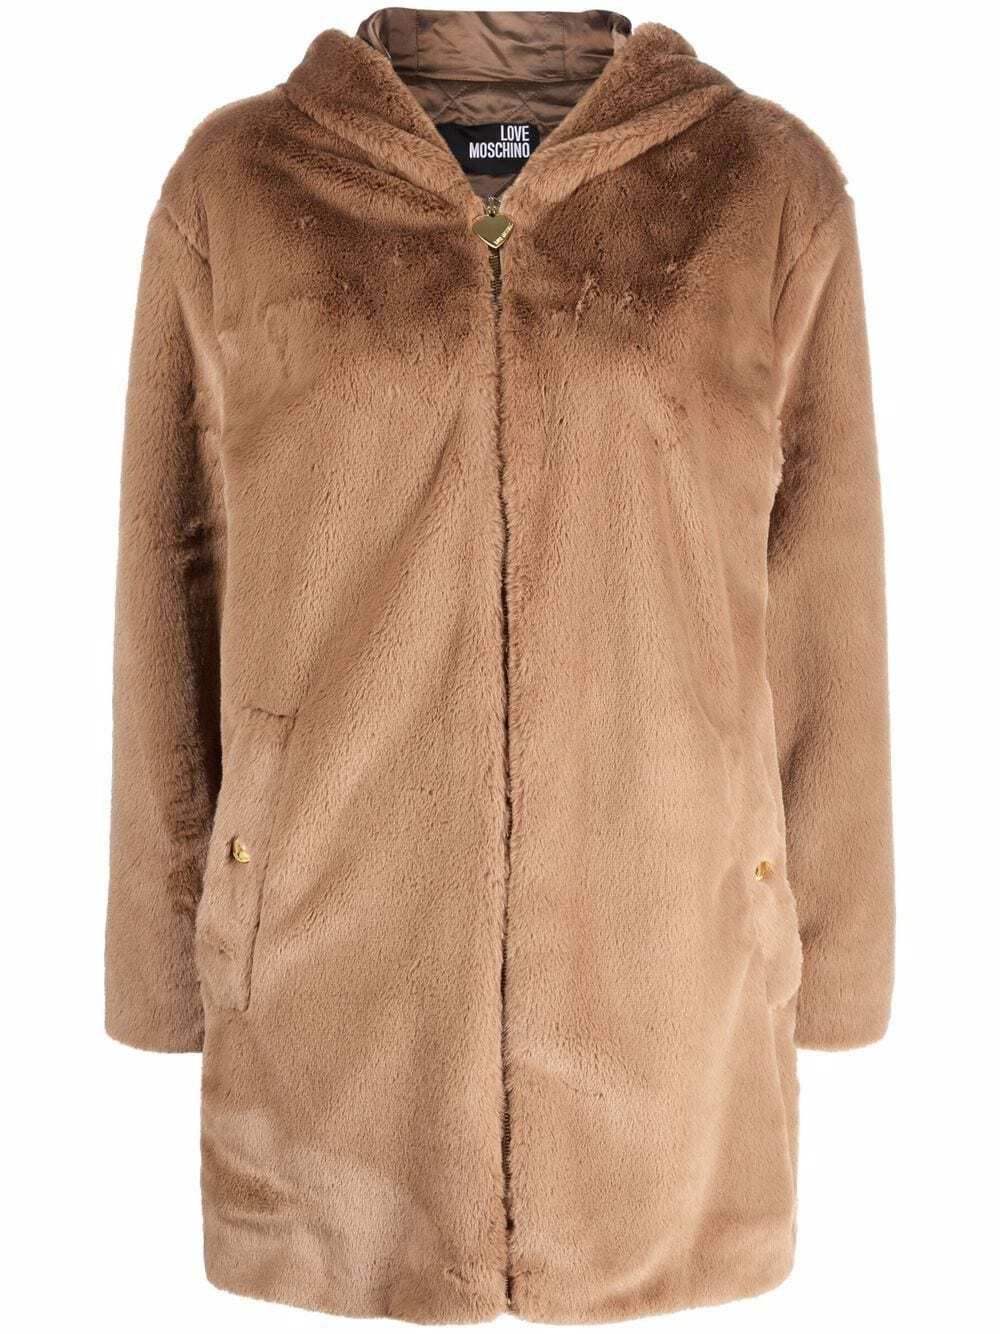 Elegant Beige Faux Fur Hooded Coat